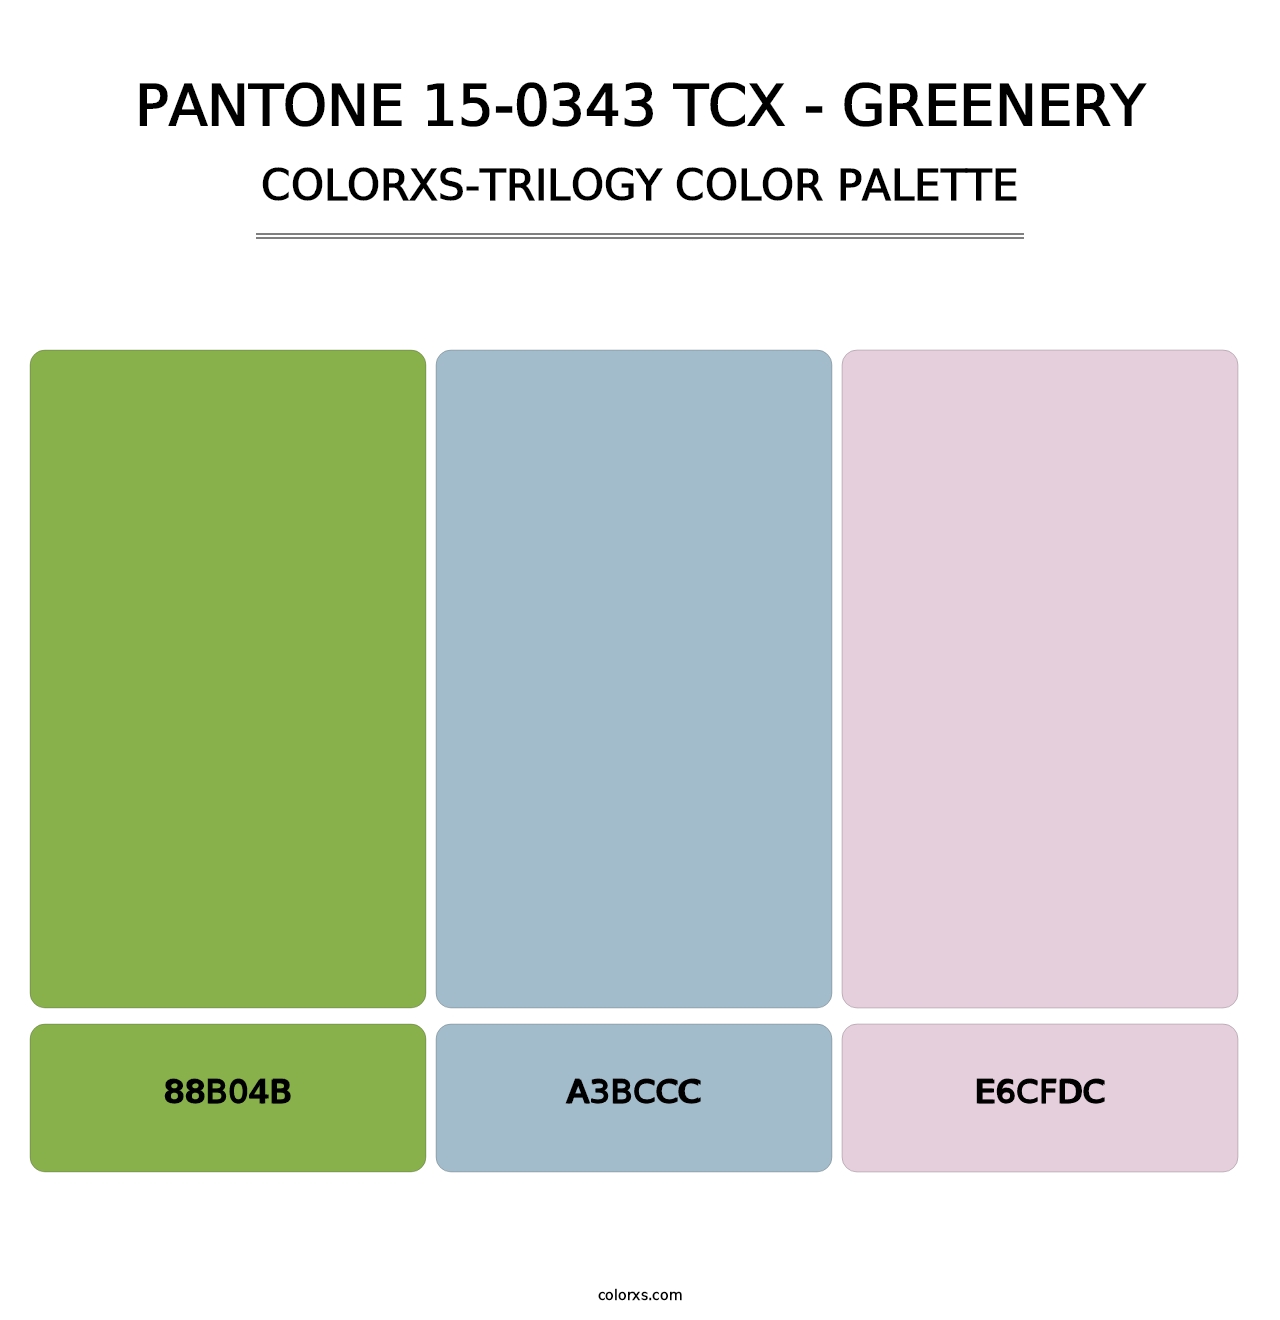 PANTONE 15-0343 TCX - Greenery - Colorxs Trilogy Palette